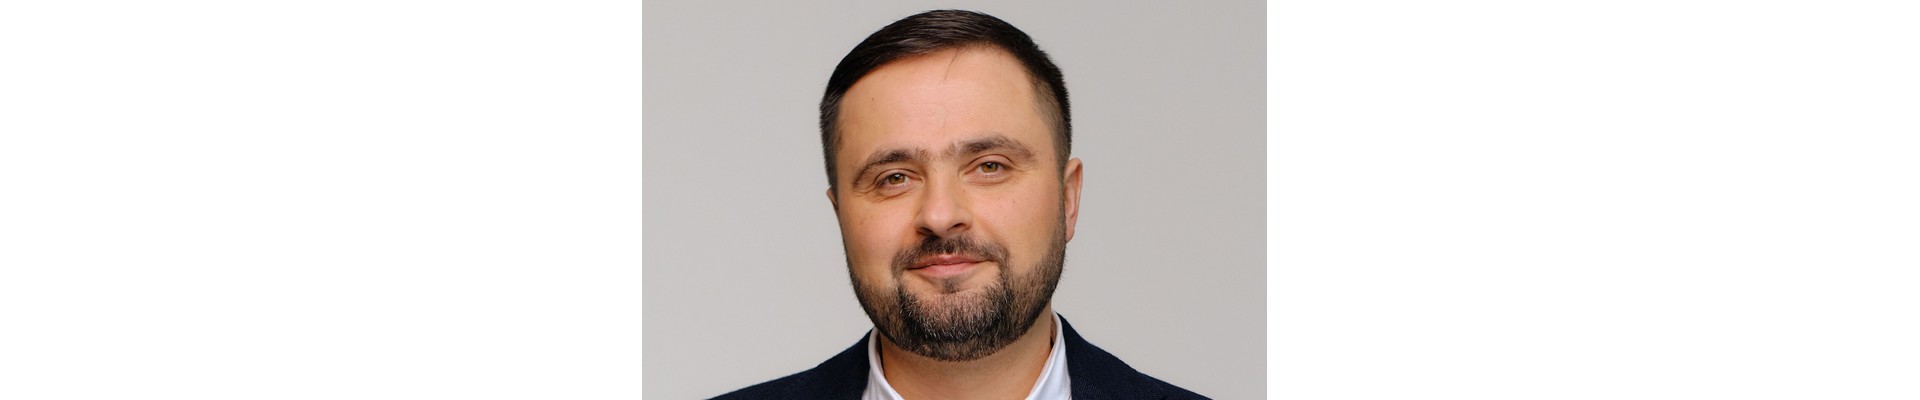 ENTREVISTA | CEO da MGID, plataforma de anúncios que operou em bunkers na Ucrânia